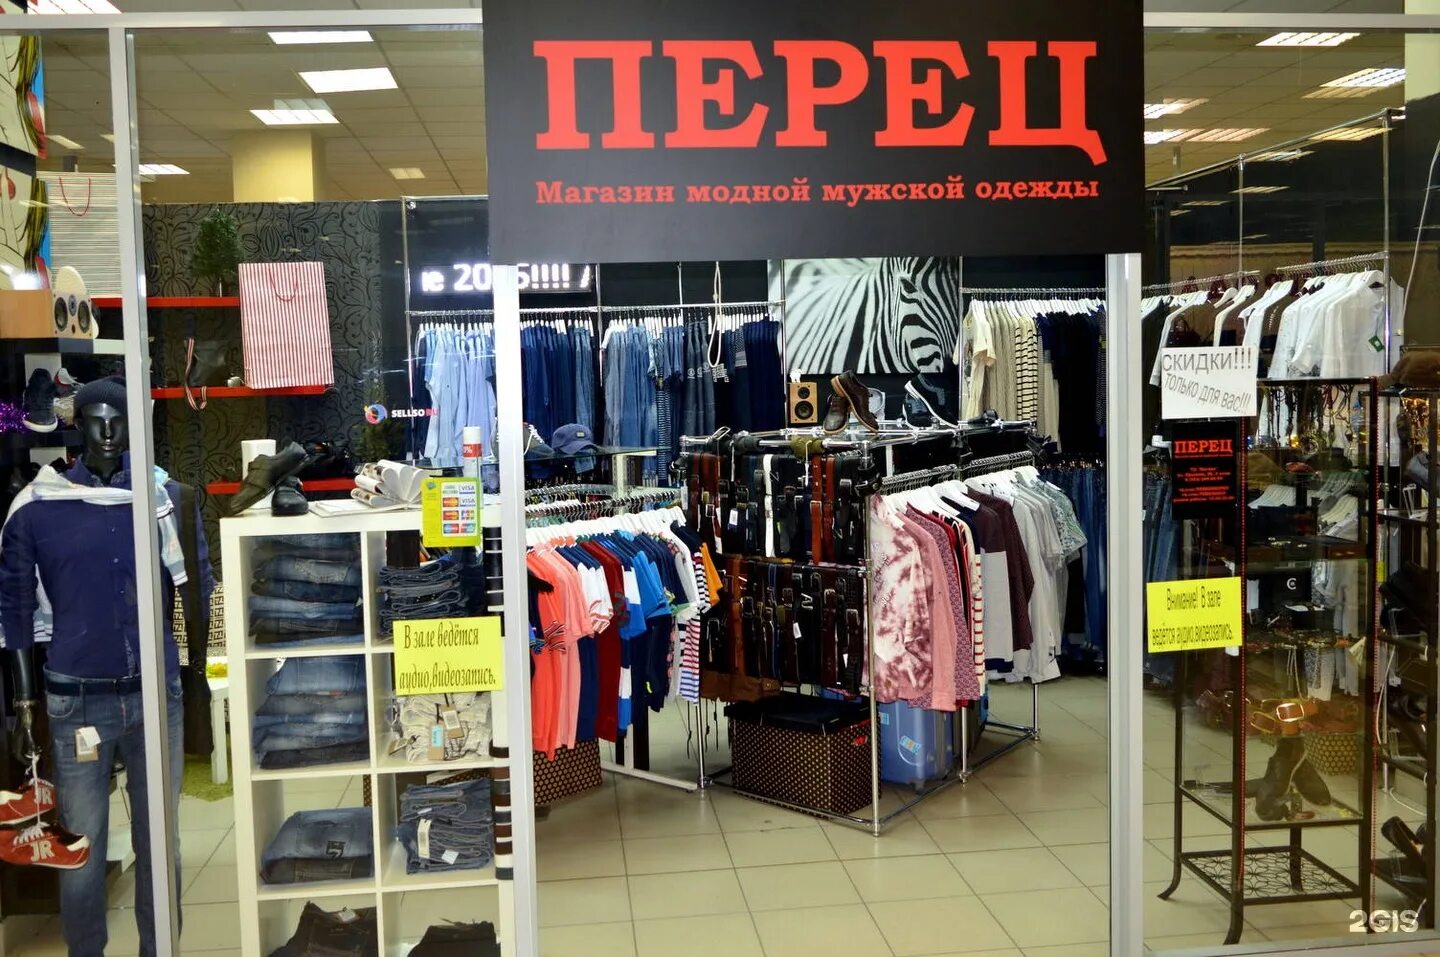 Большие мужские магазины в москве. Название мужского магазина. Отдел мужской одежды. Магазин мужской и женской одежды. Интернет магазин мужской одежды.